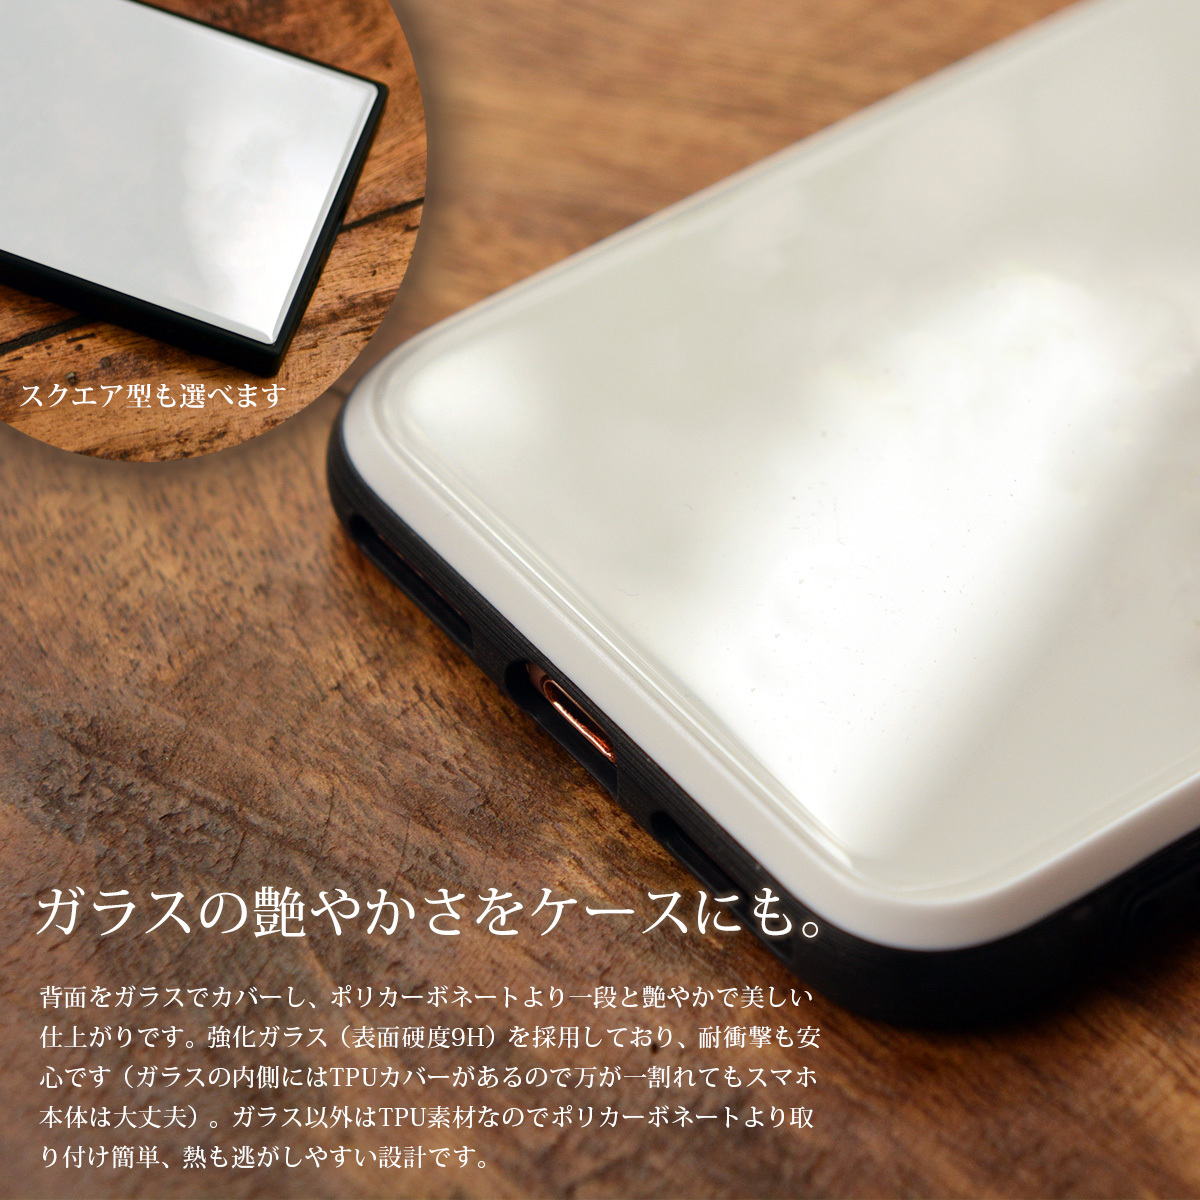 強化ガラス Iphone11 スマホカバー 猫と金魚 ねこ スマホケース Iphoneケース 携帯ケース ケースガーデン